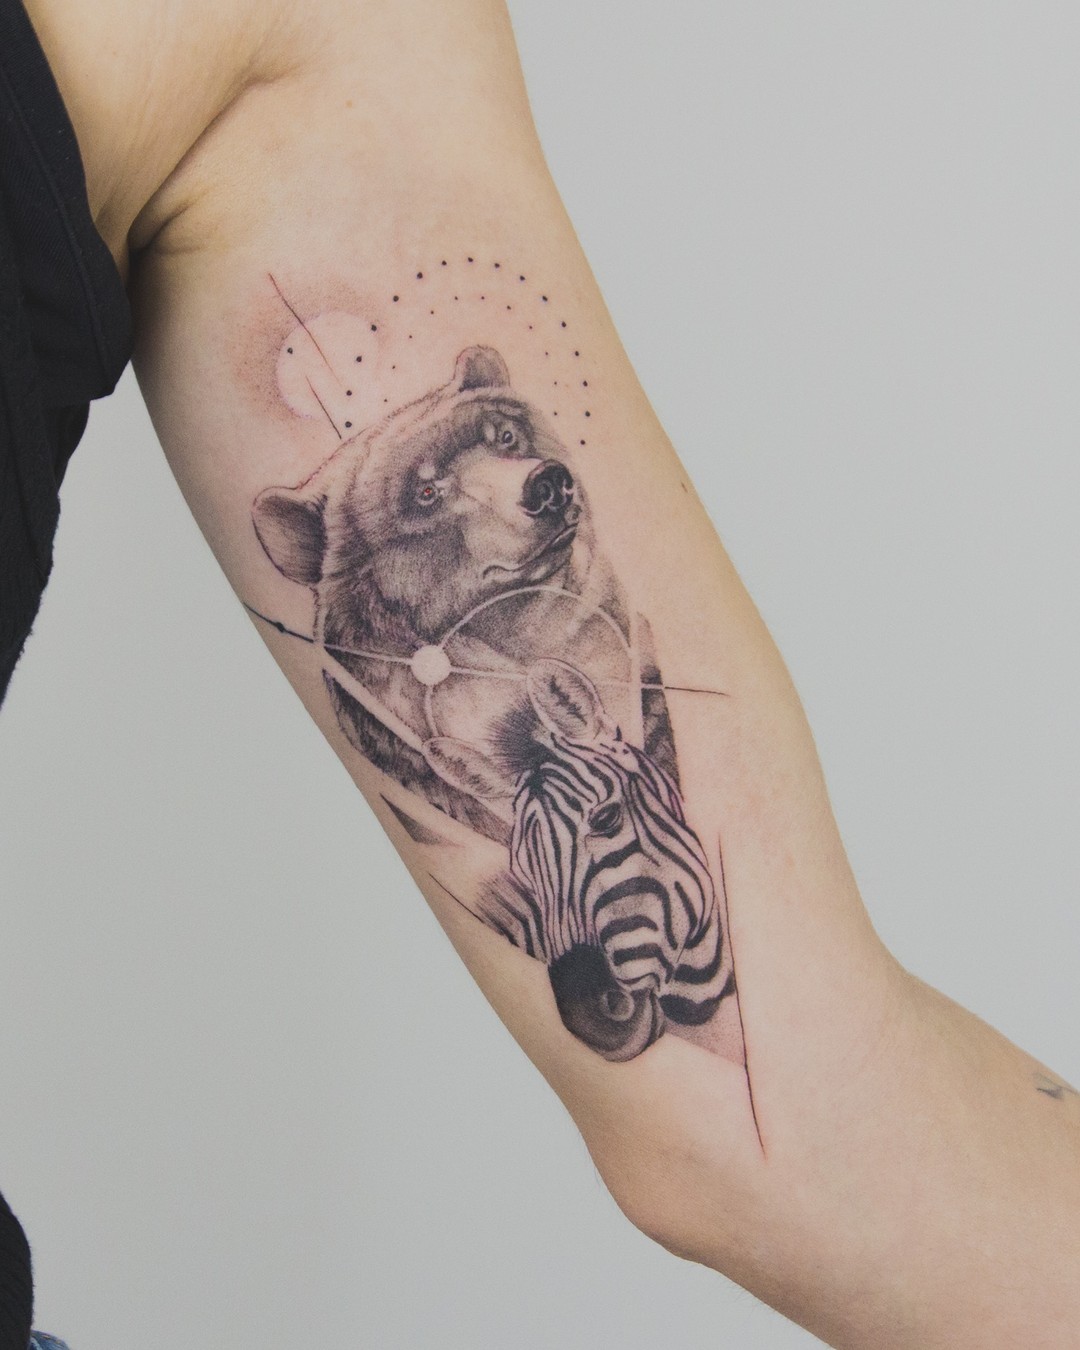 Zebra tattoo design by kalawa.tattooer